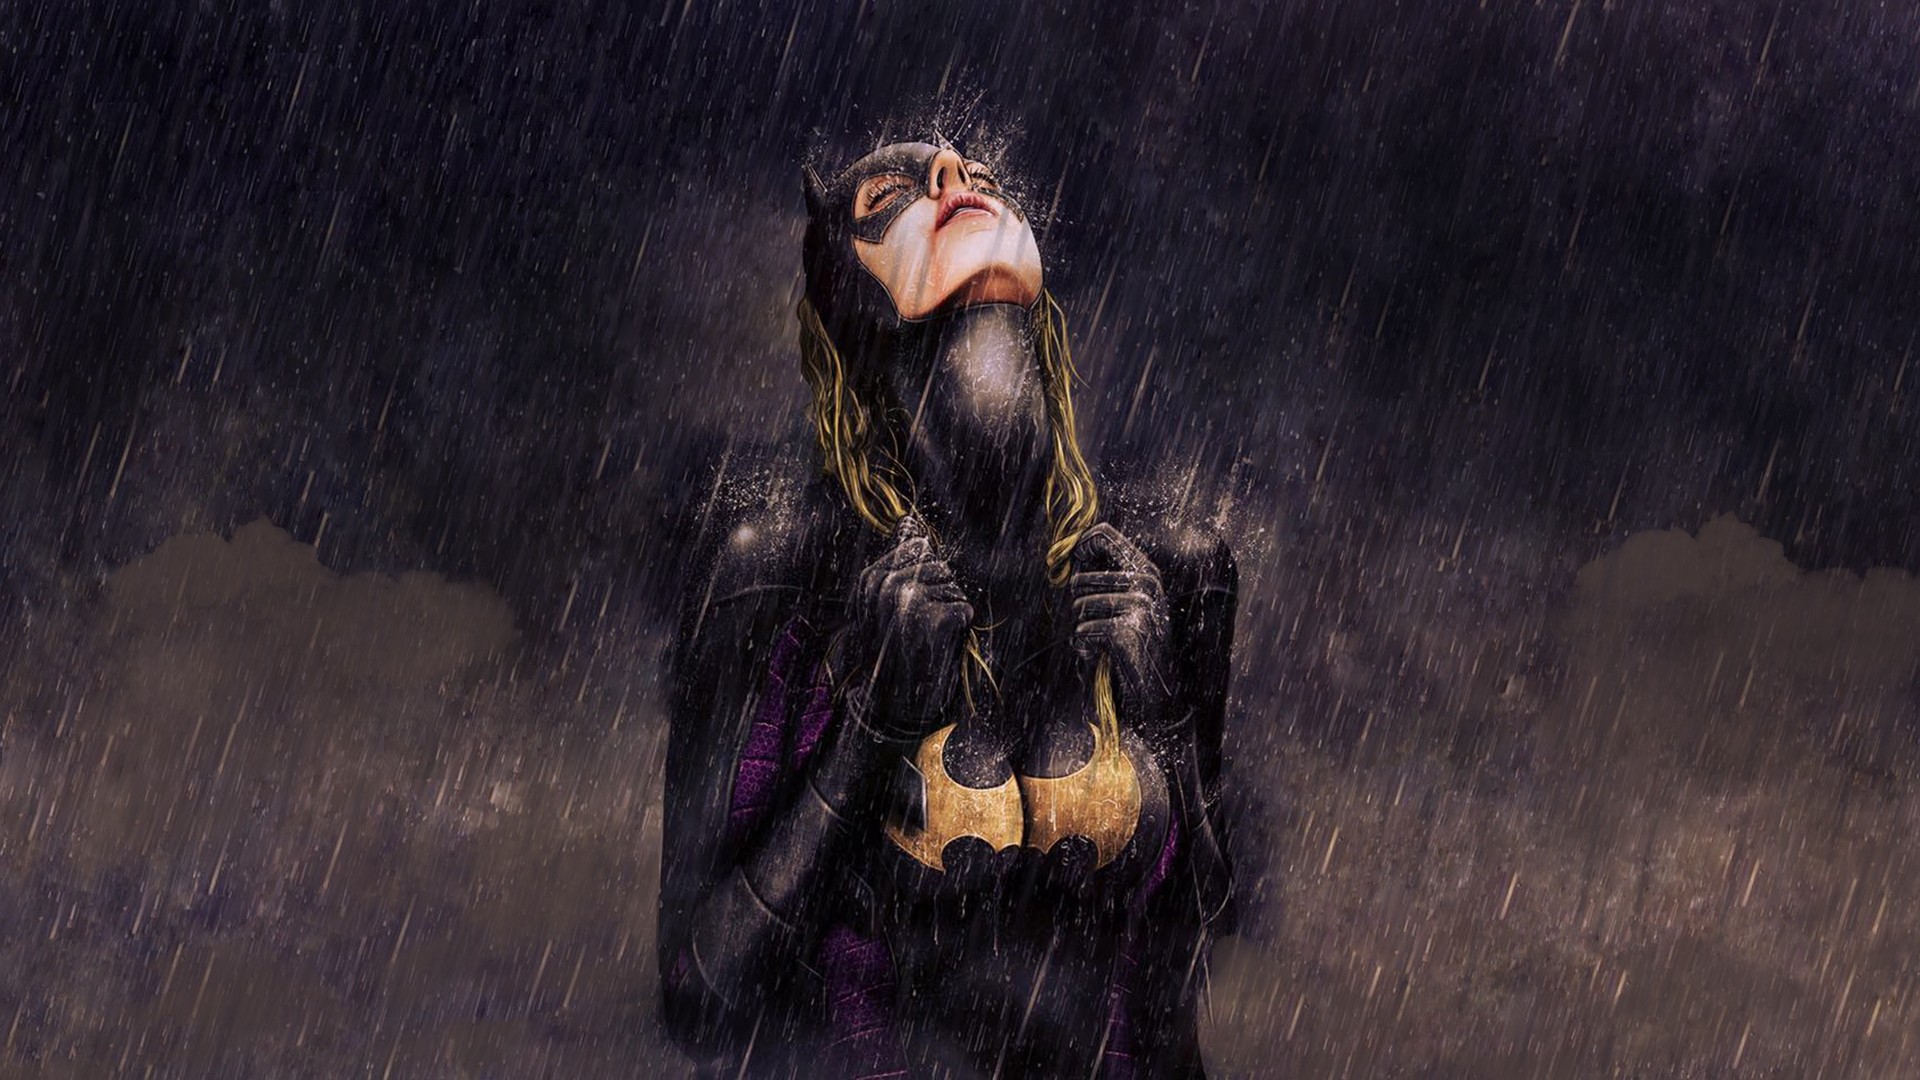 General 1920x1080 Batgirl fan art drawing artwork rain closed eyes Batman boobs wet wet hair long hair women big boobs